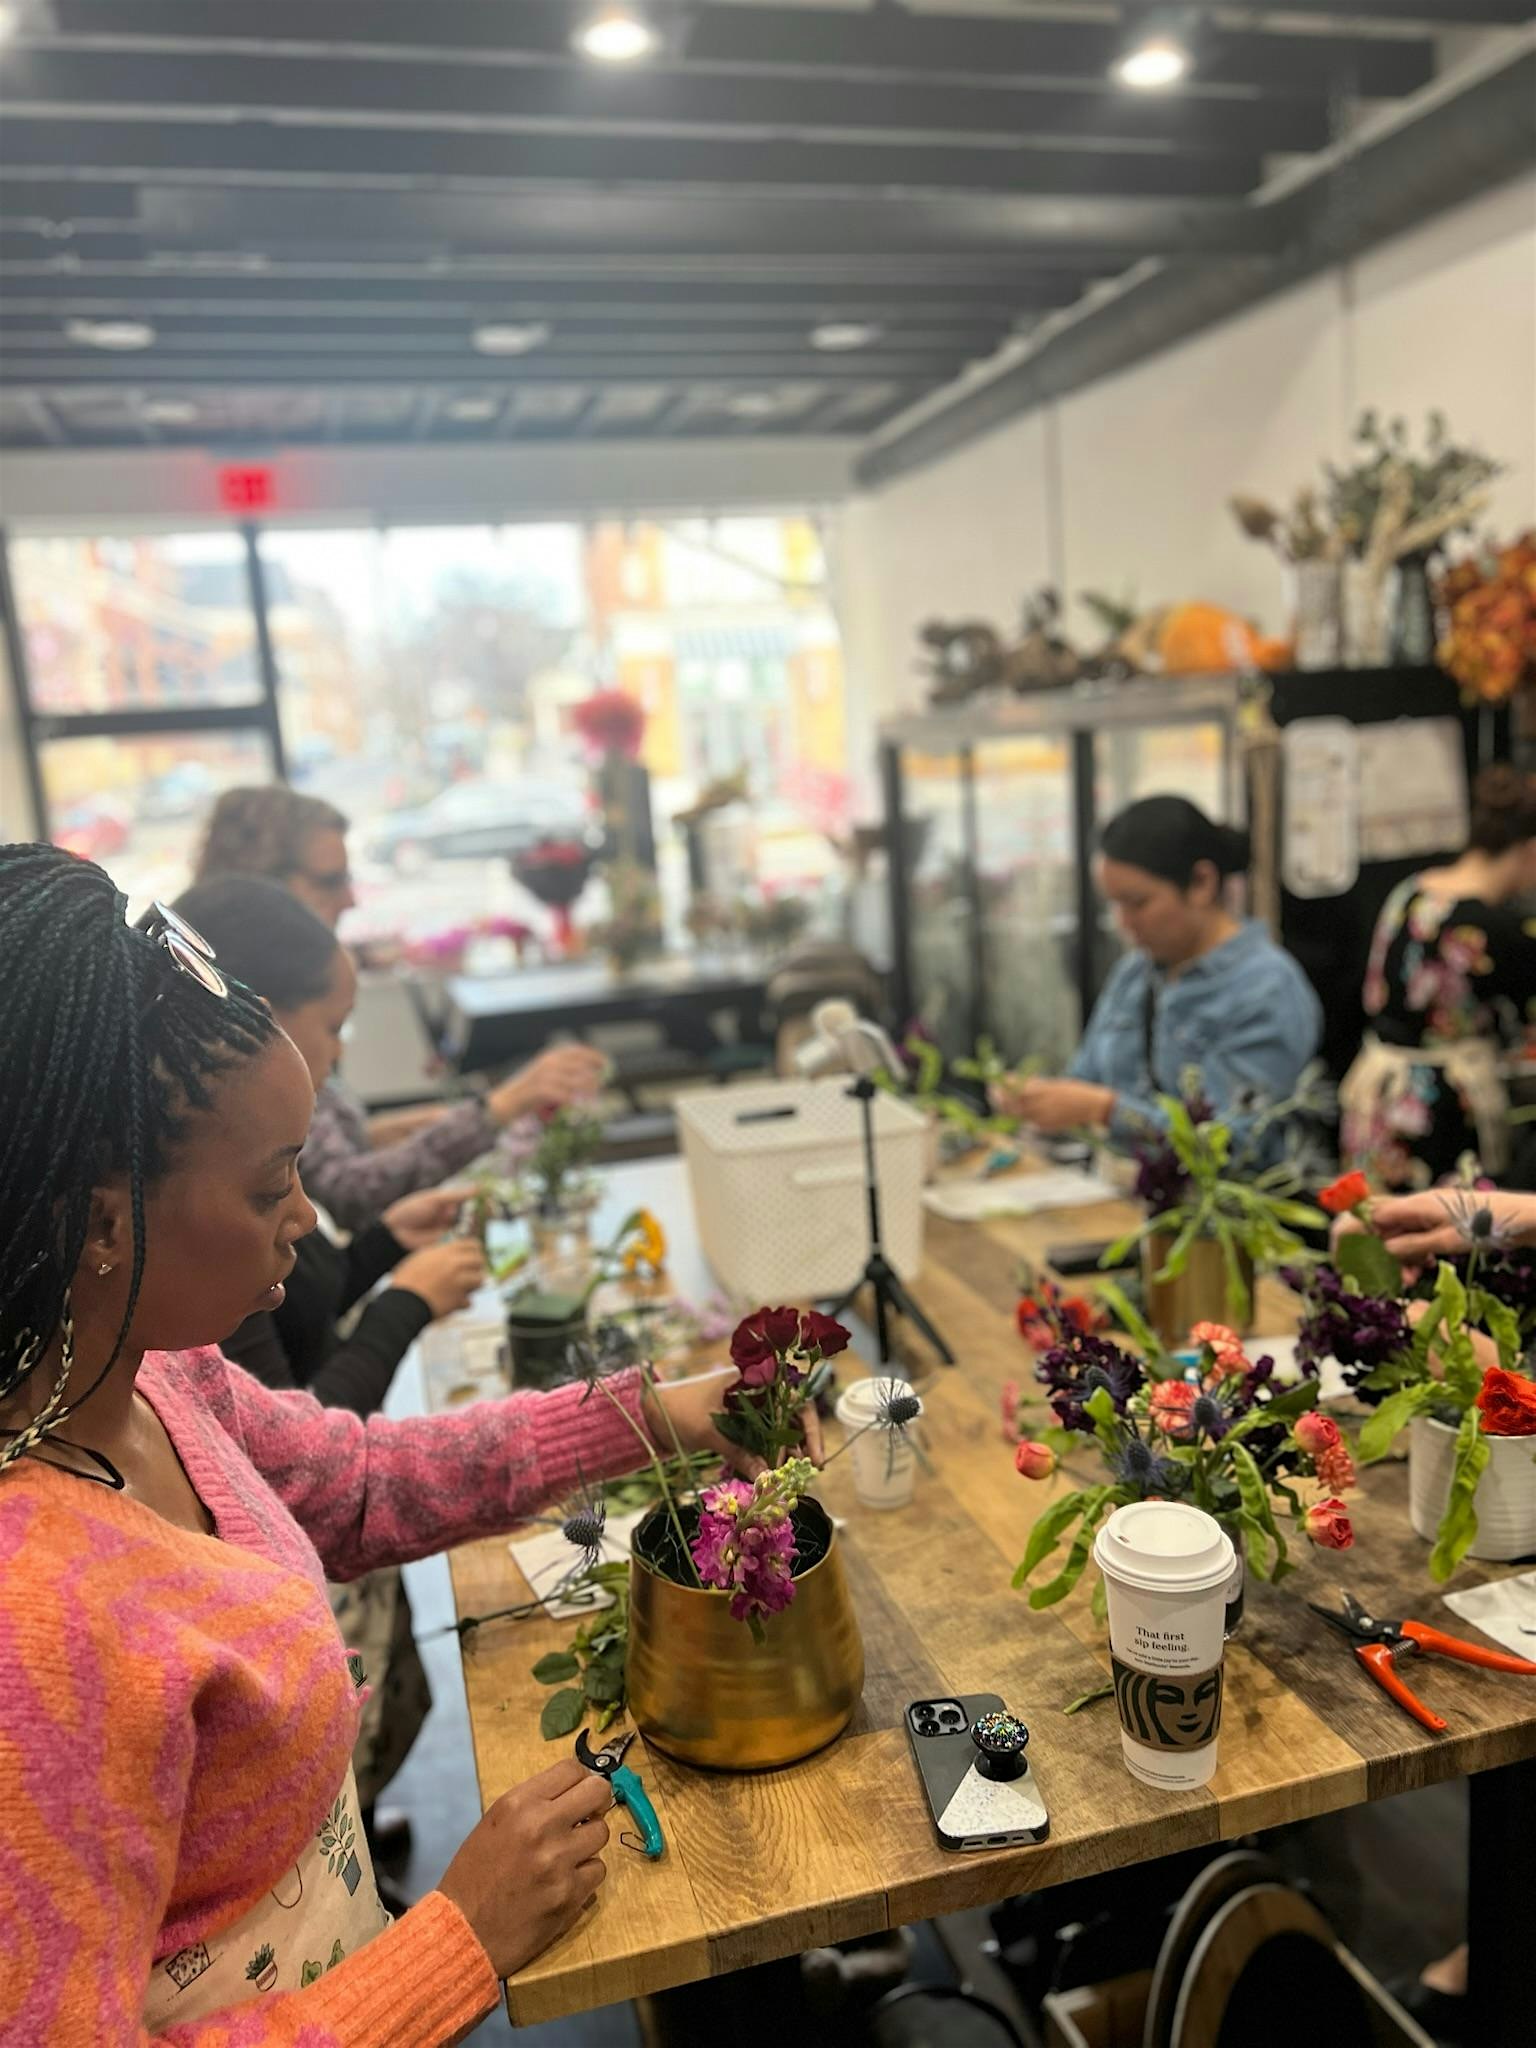 Floral Design Workshop